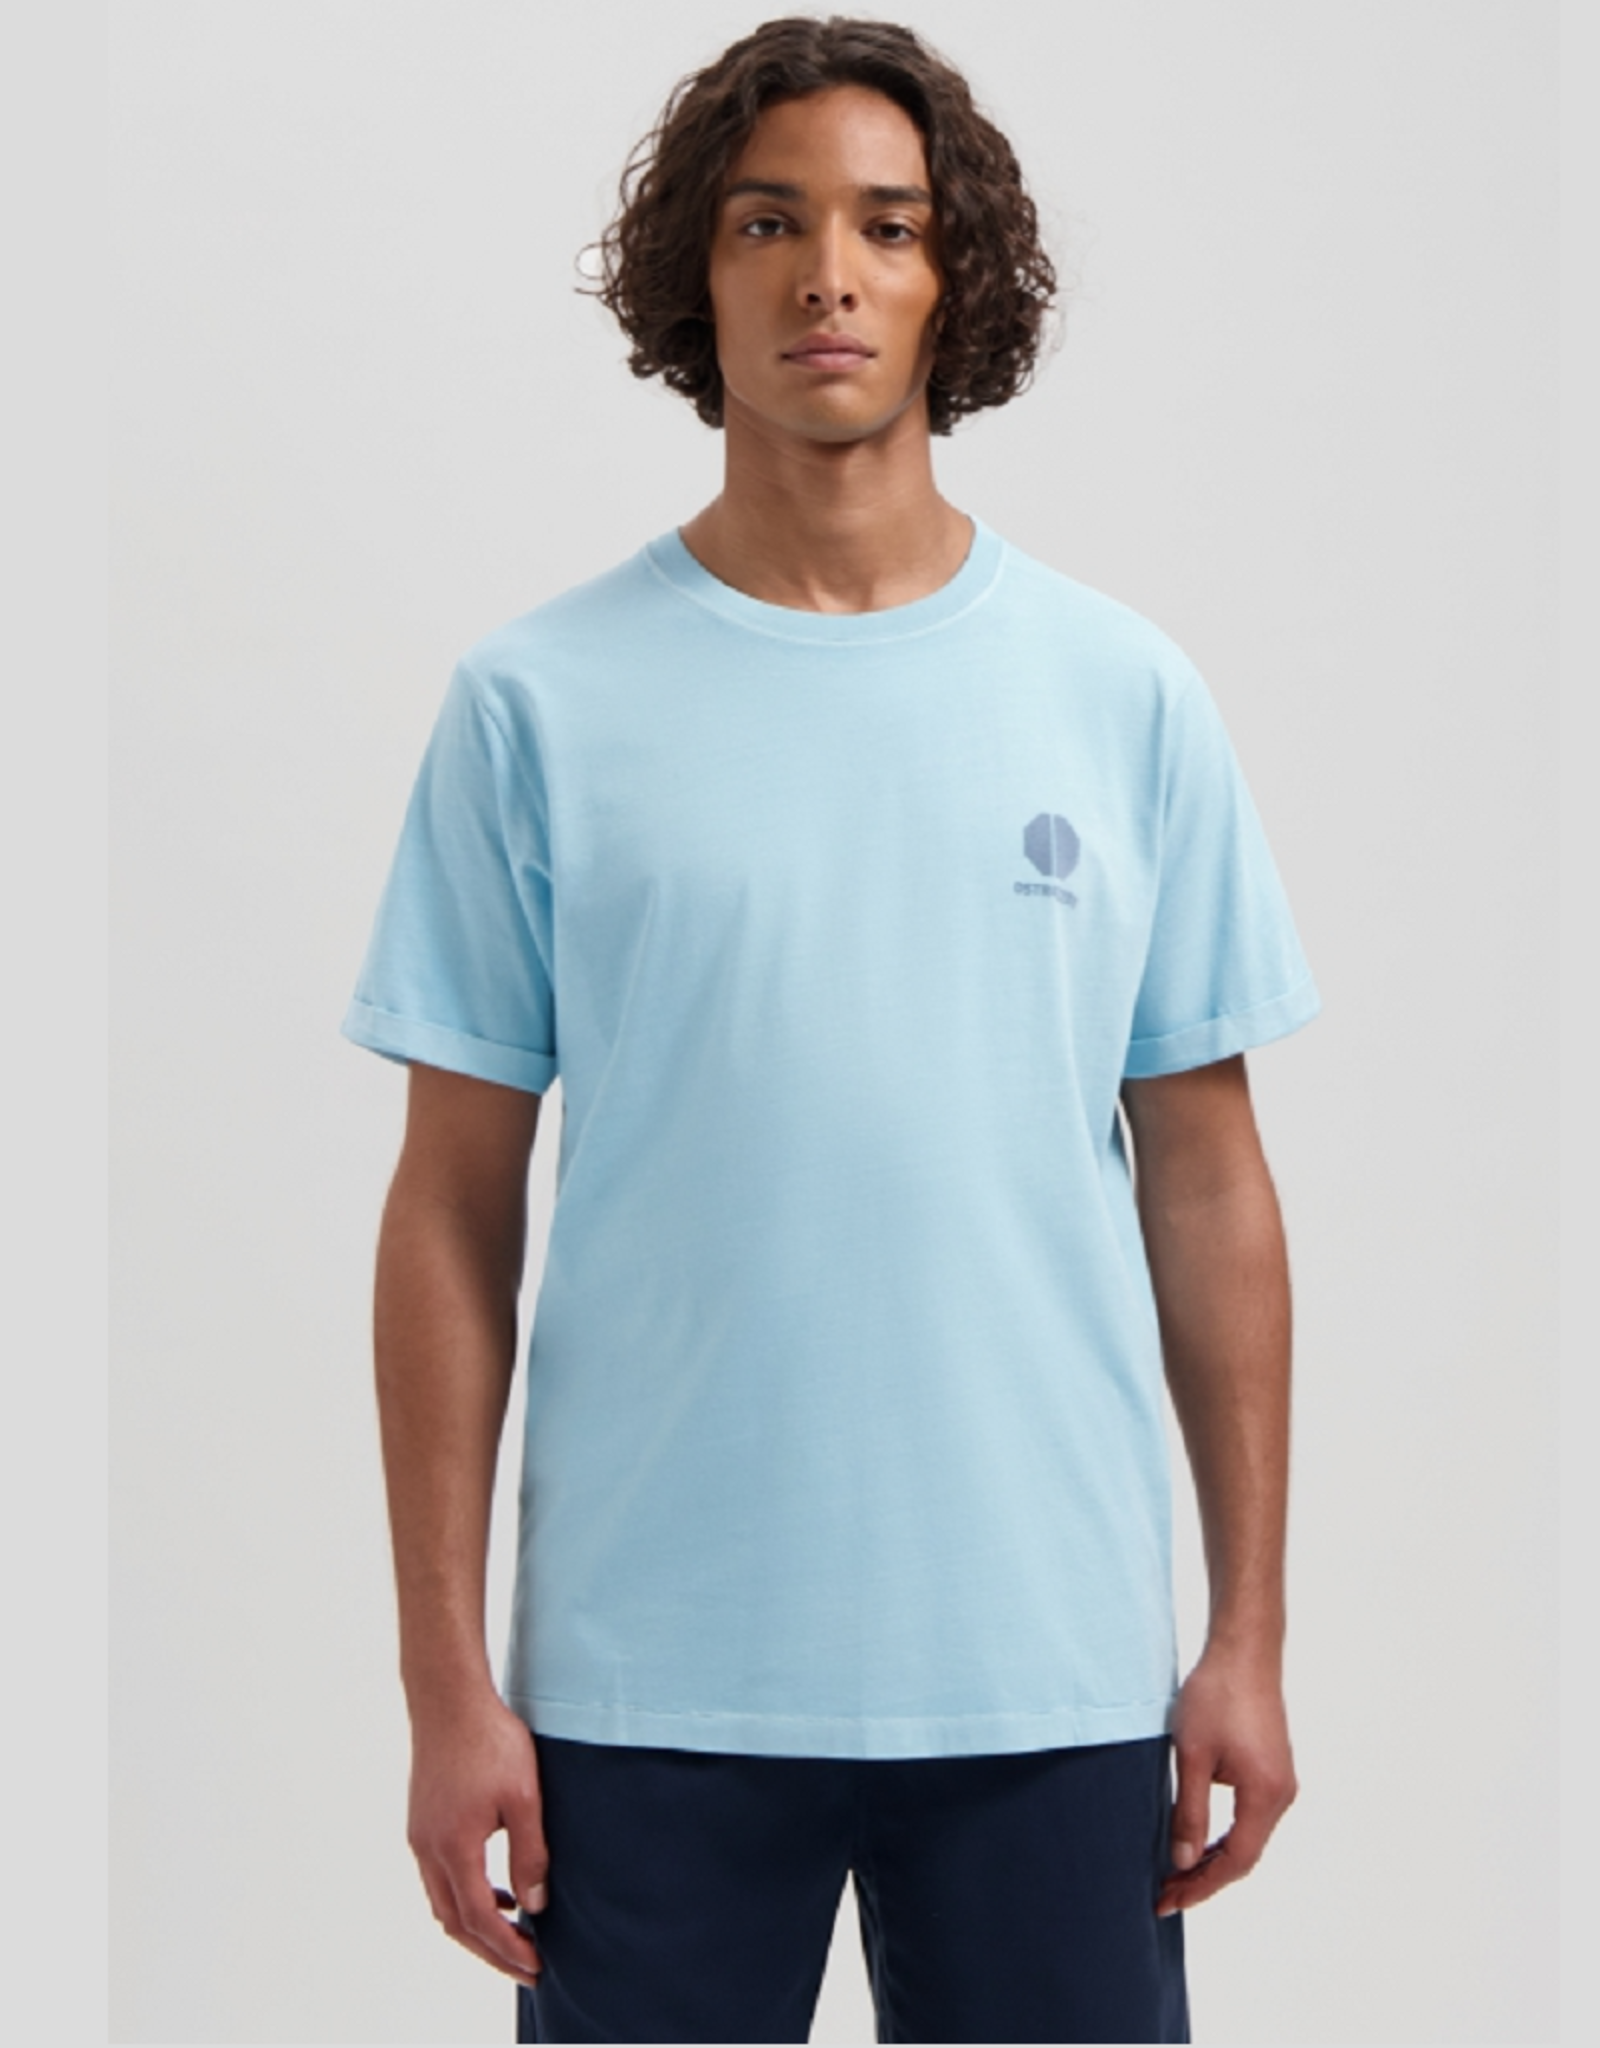 Vanguard Dstrezzes t-shirt light blue